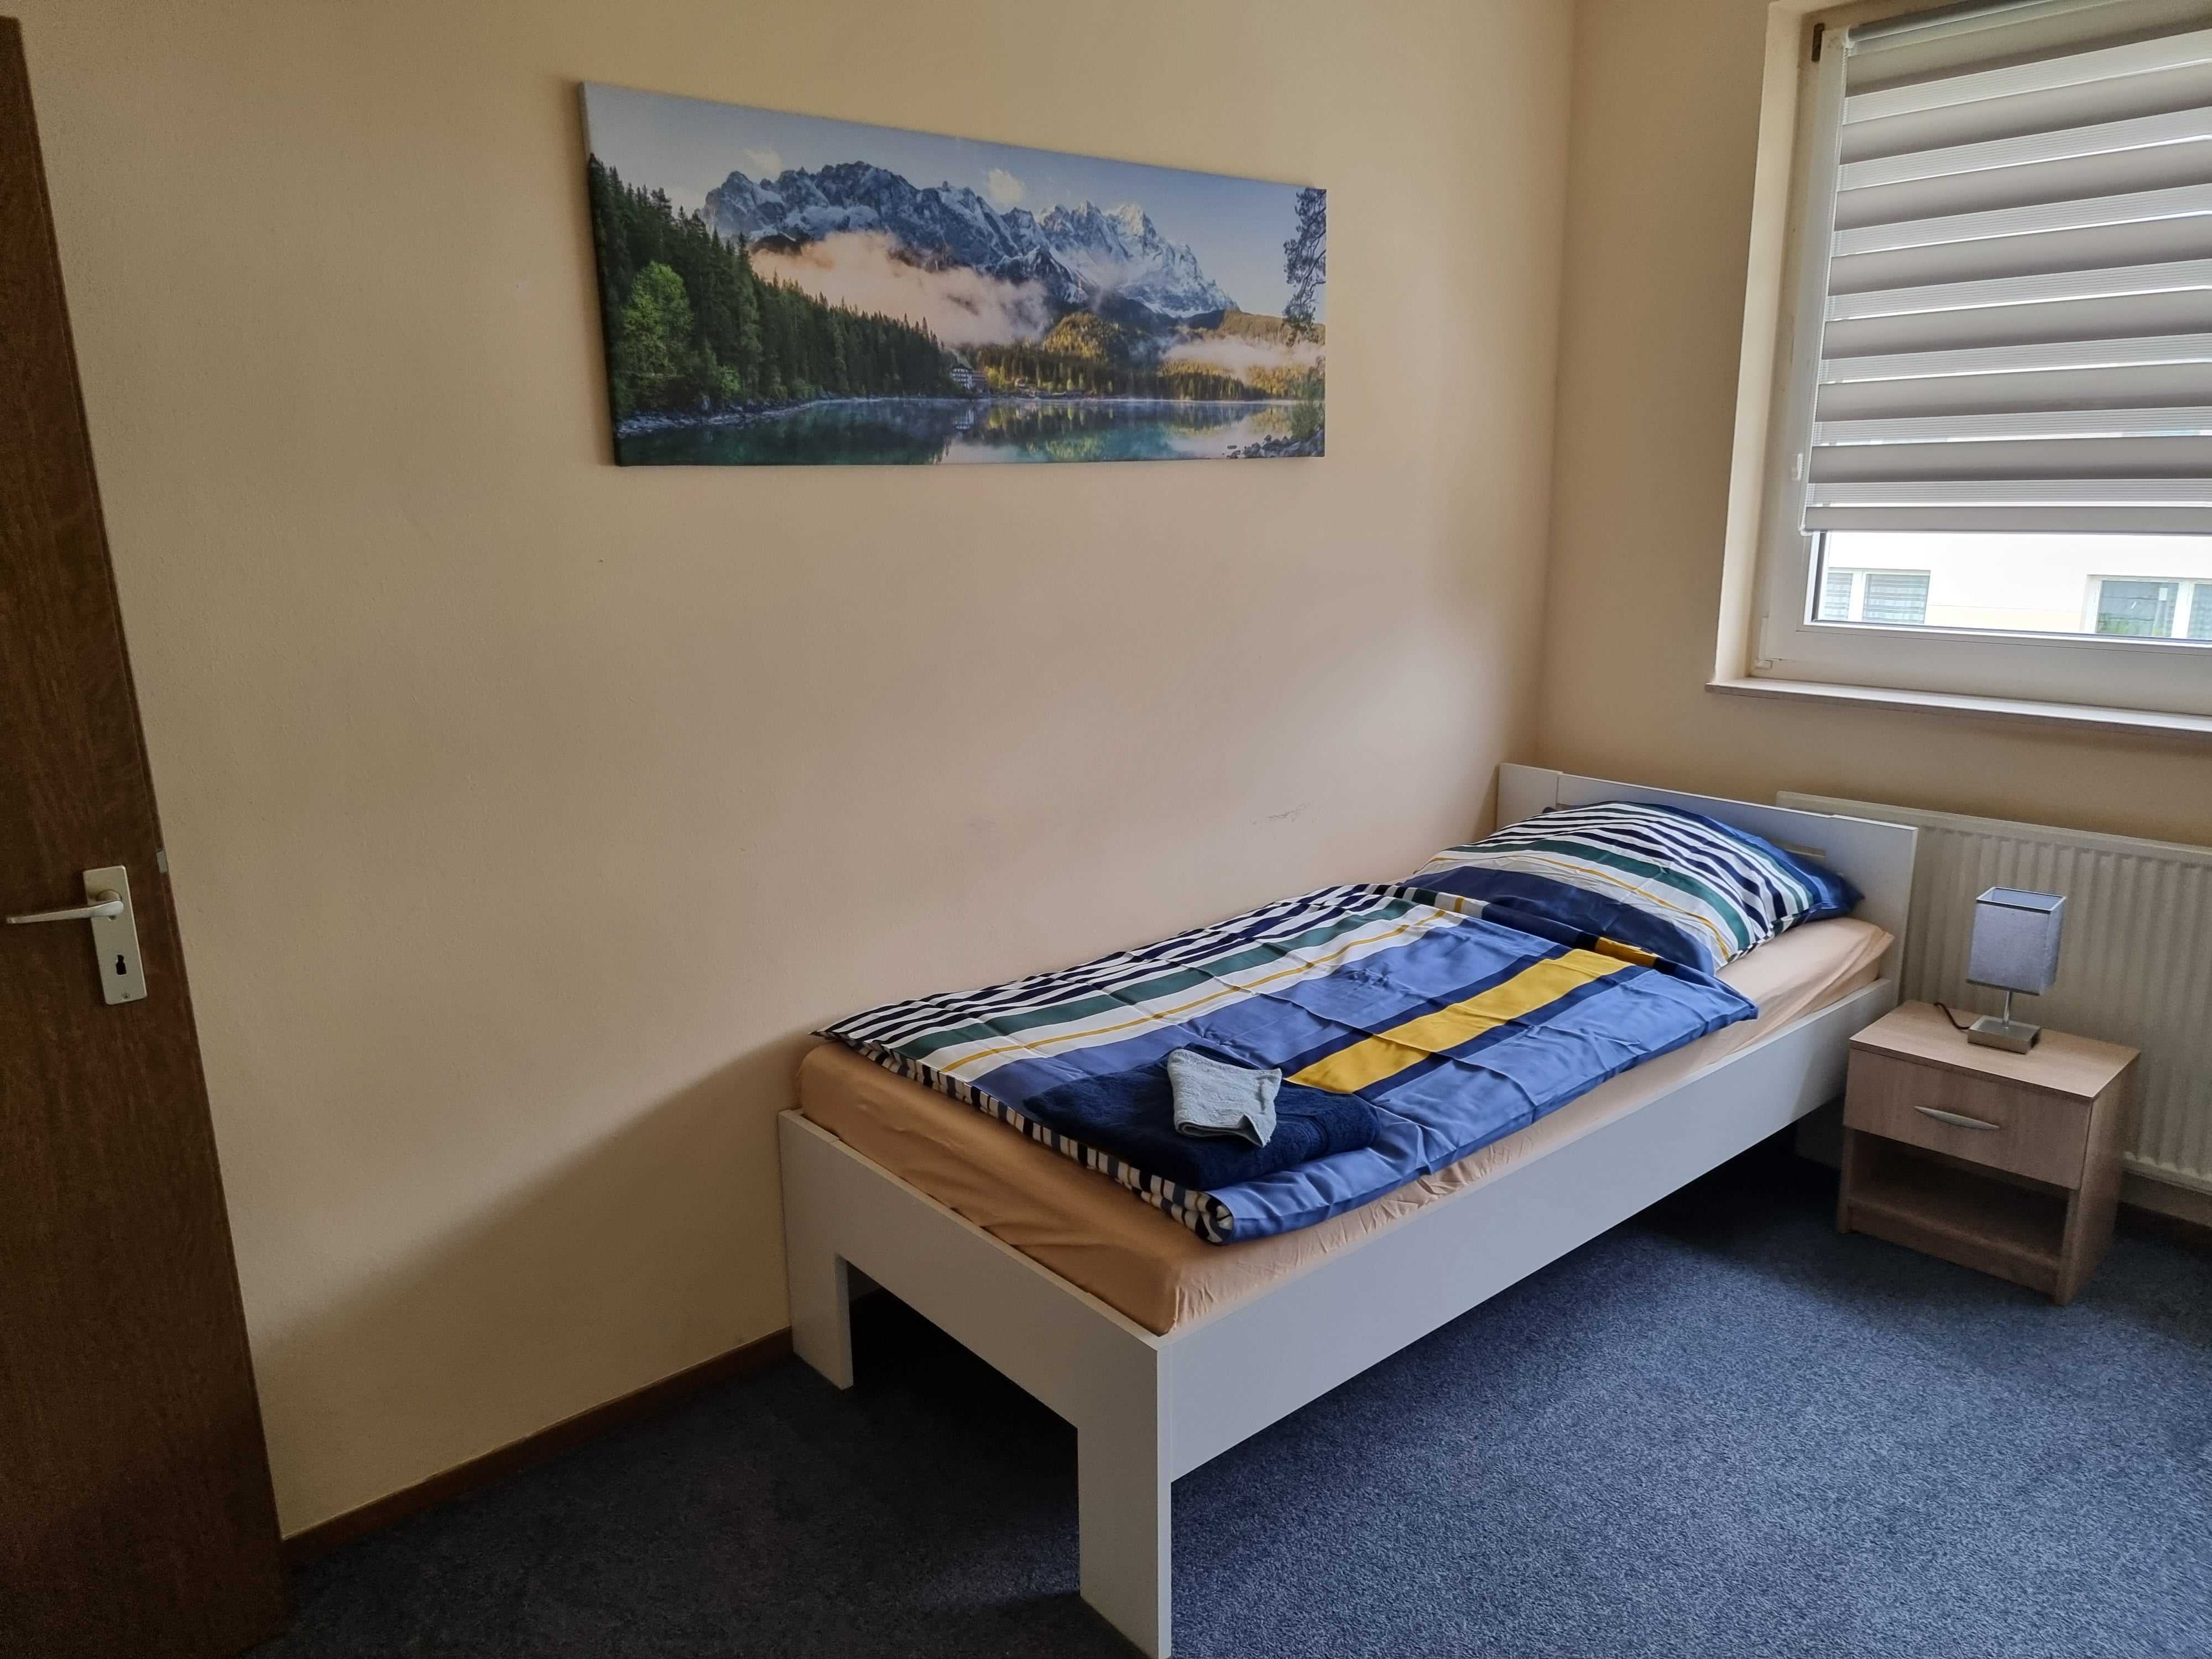 Zimmer Alpenrose mit Bett, Bild, Fenster von Onkel Tom